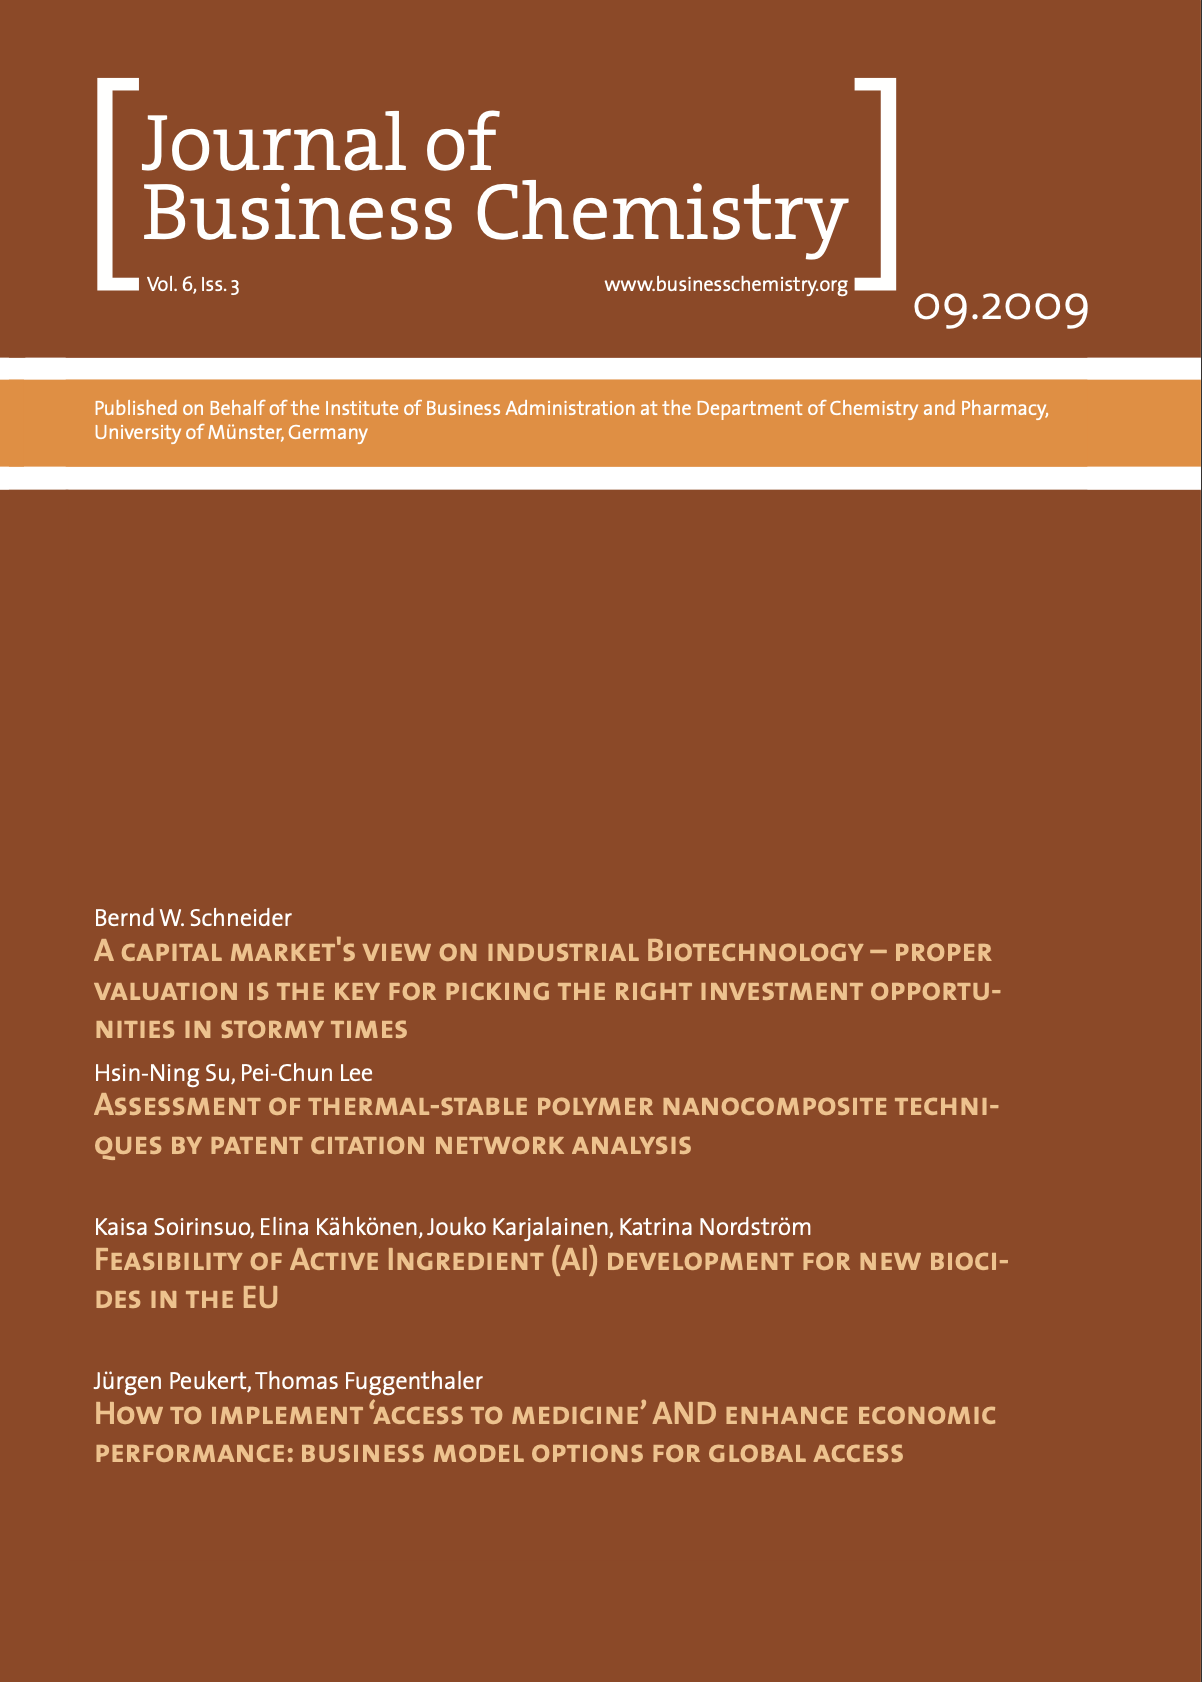 Journal of Business Chemistry September 2009